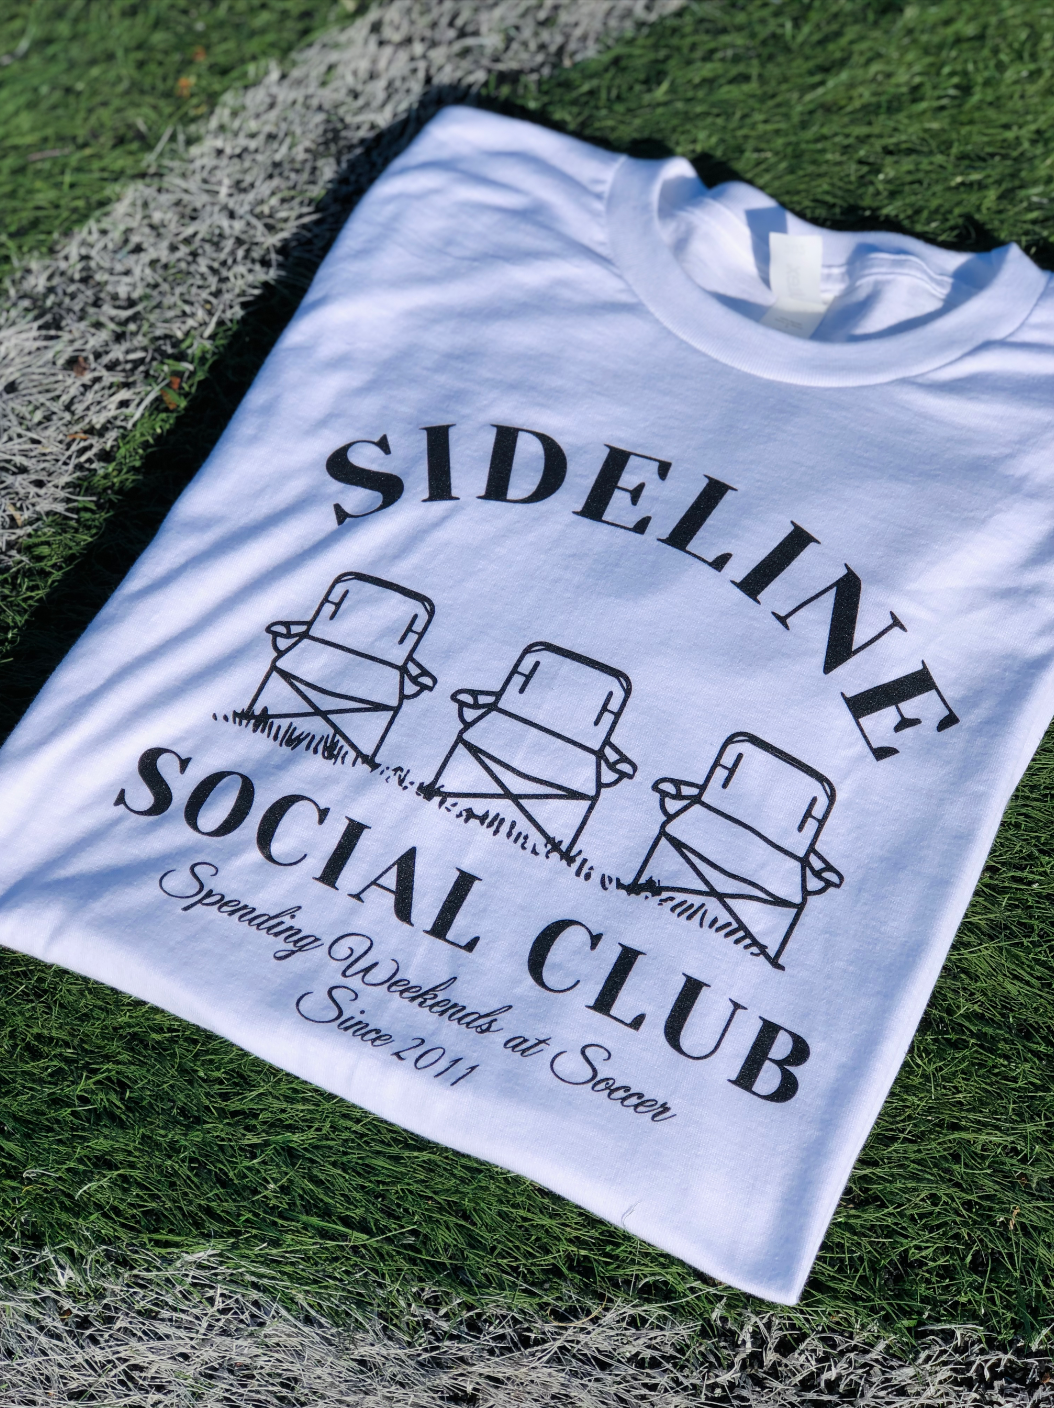 Sideline Social Club T-Shirt